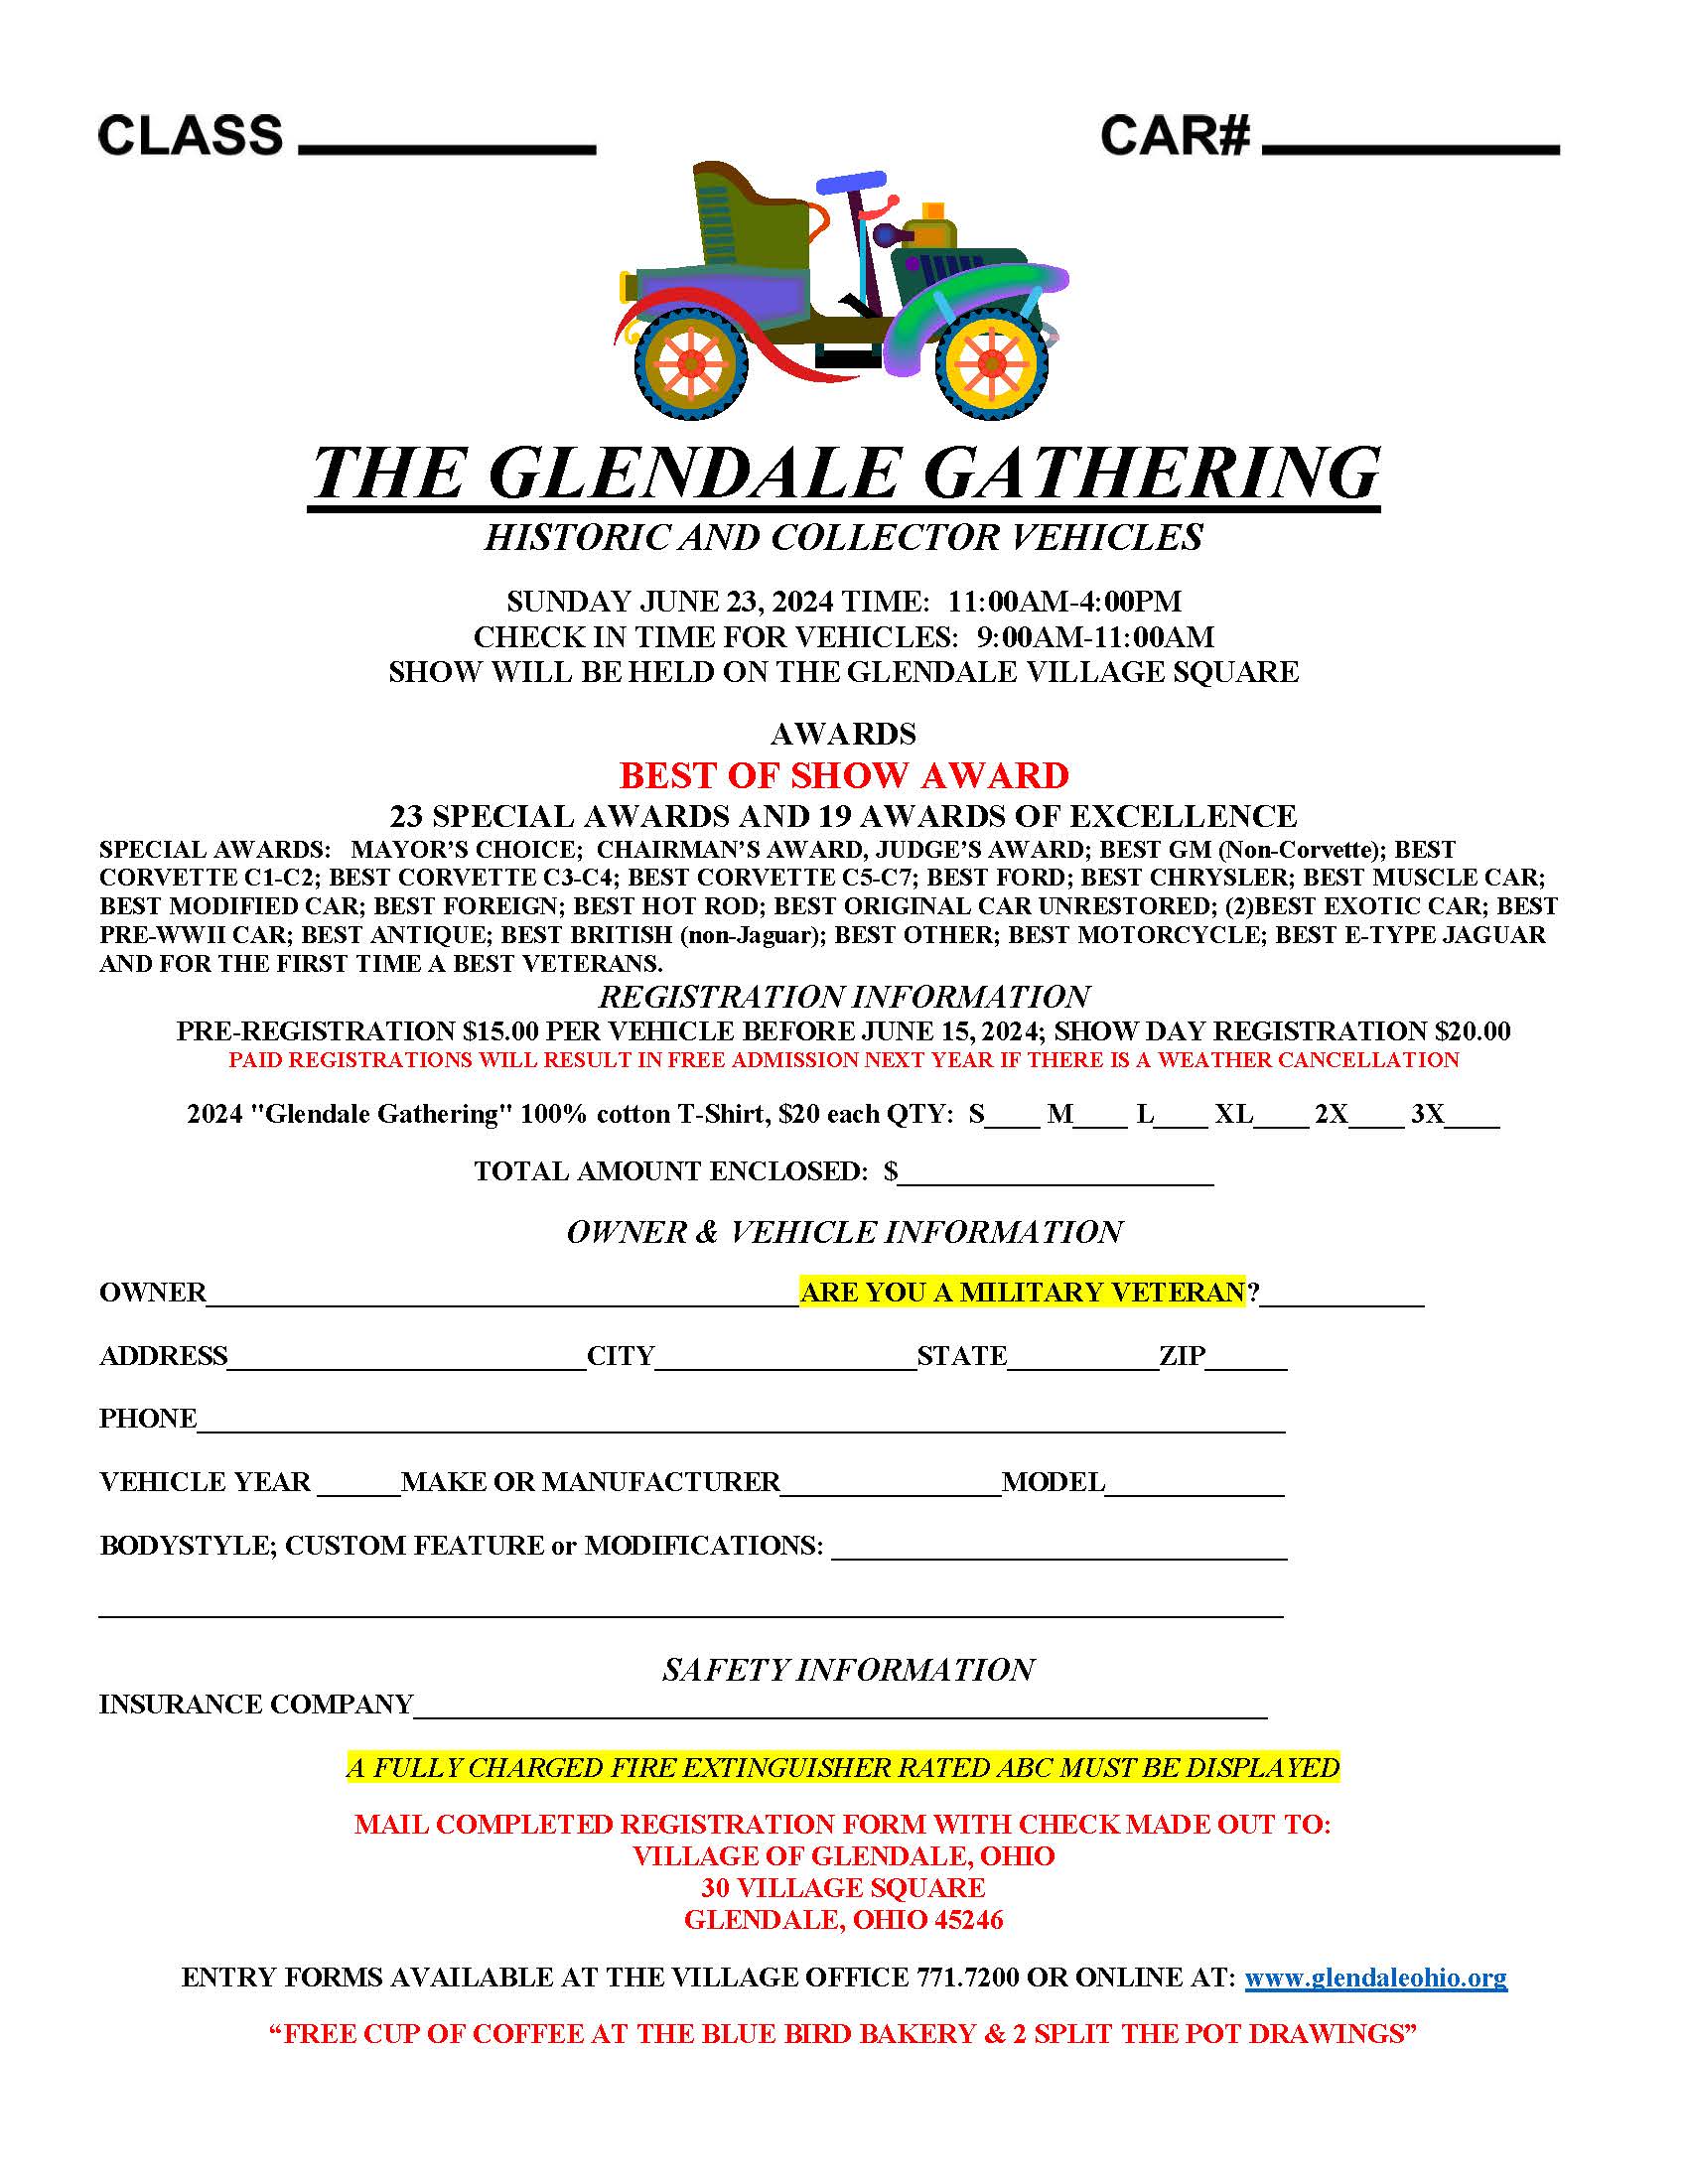 Glendale Gathering 2024 car show registration form NEW